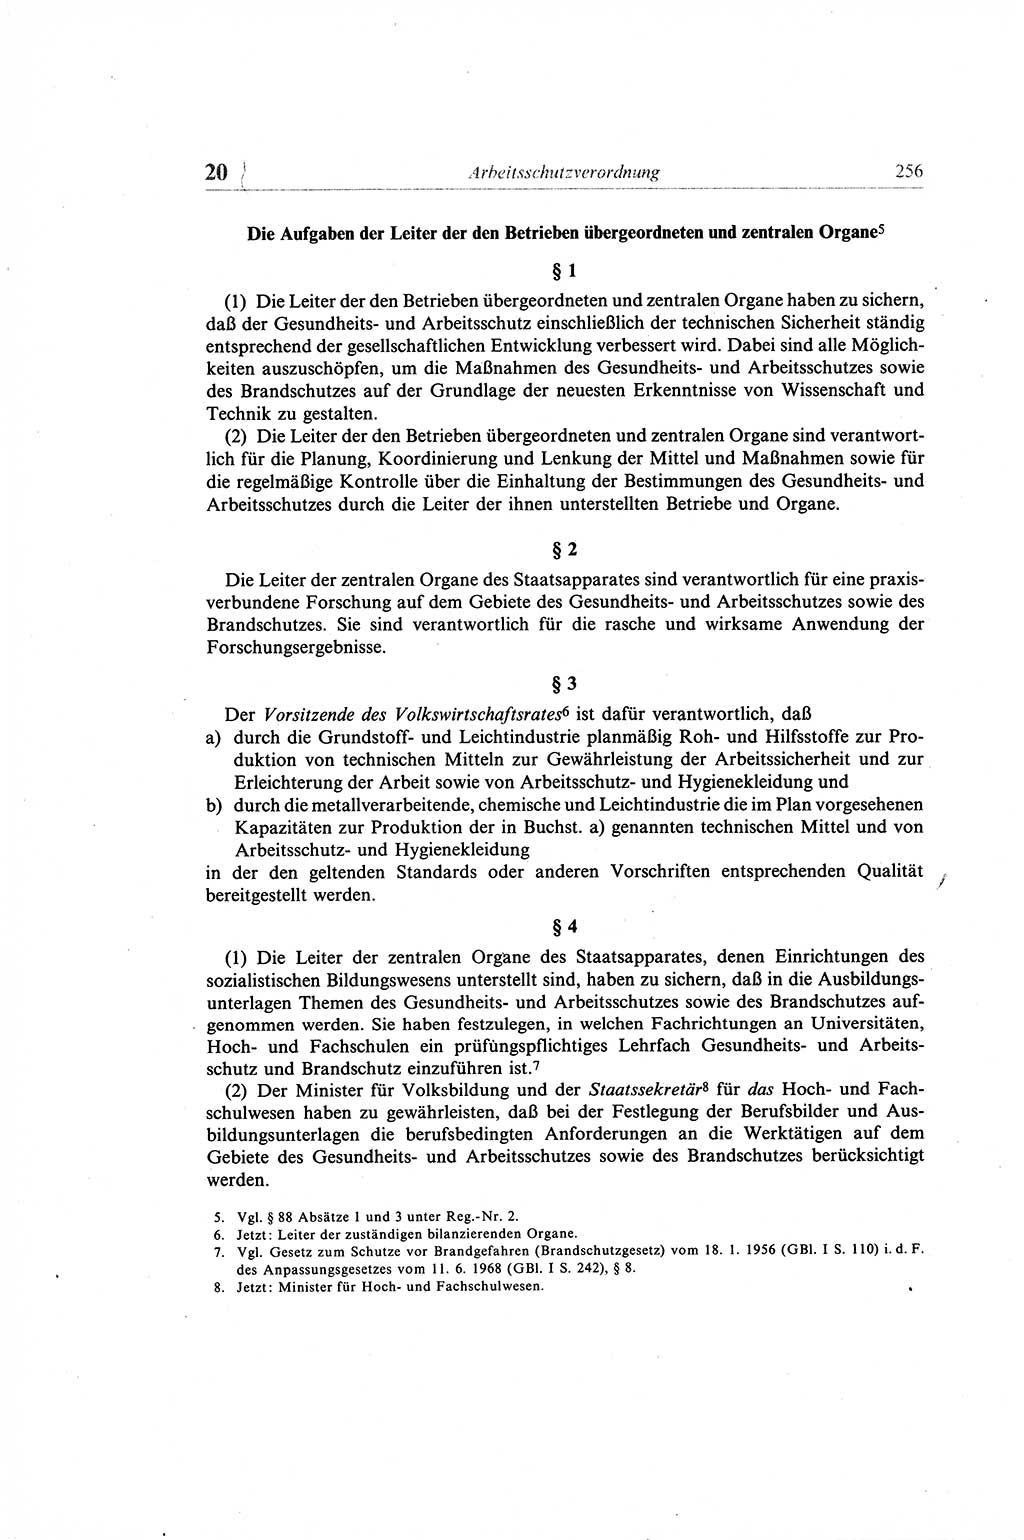 Gesetzbuch der Arbeit (GBA) und andere ausgewählte rechtliche Bestimmungen [Deutsche Demokratische Republik (DDR)] 1968, Seite 256 (GBA DDR 1968, S. 256)